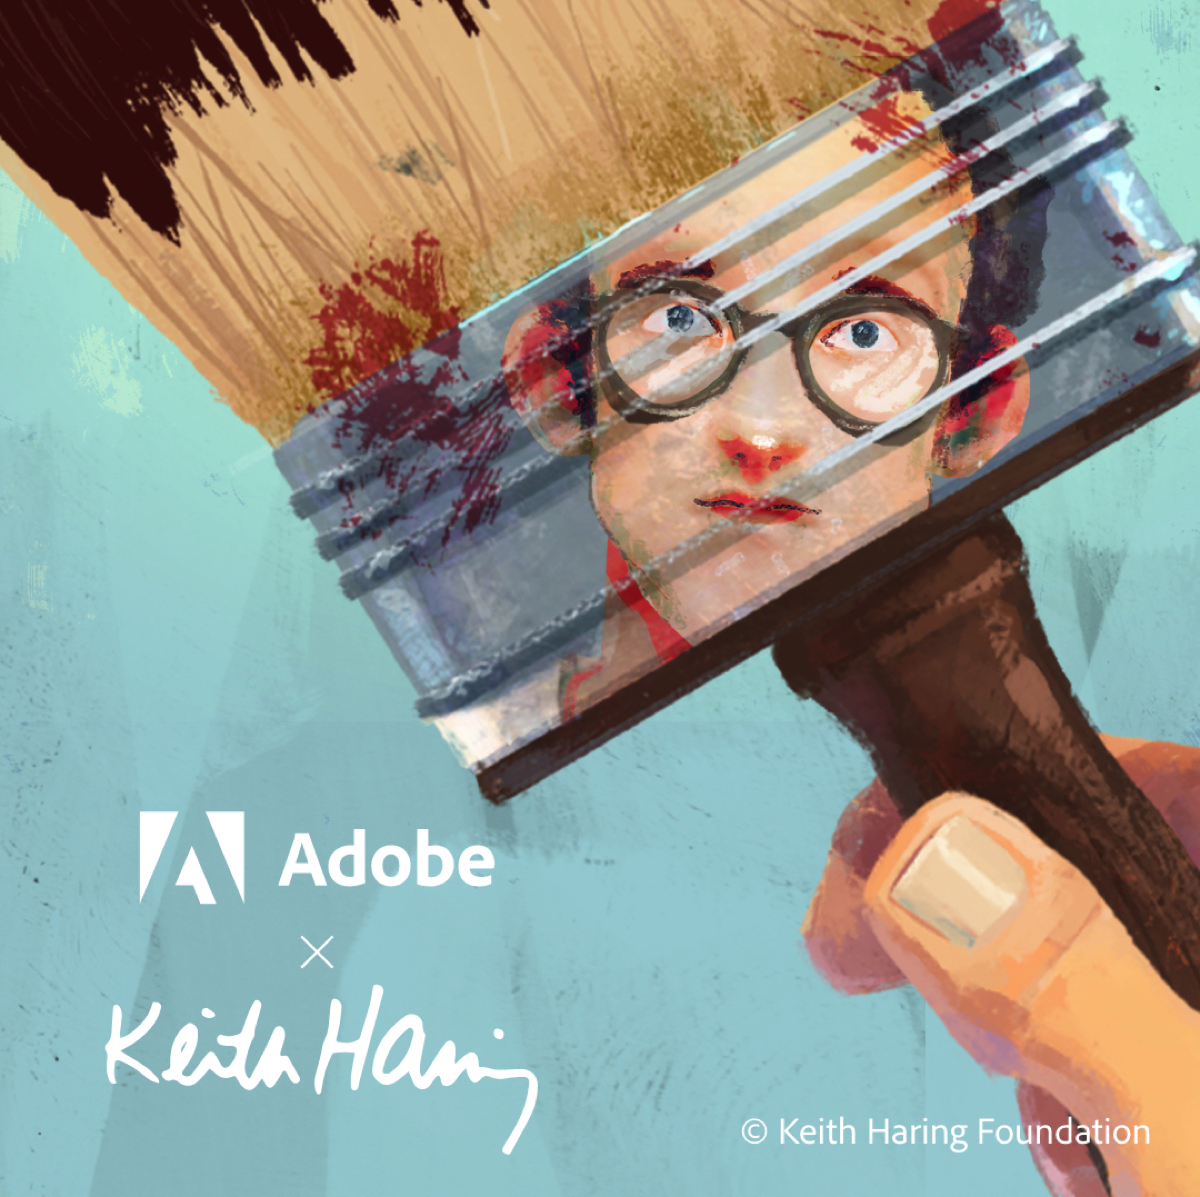 Adobe ricrea in digitale pennelli e strumenti di Keith Haring